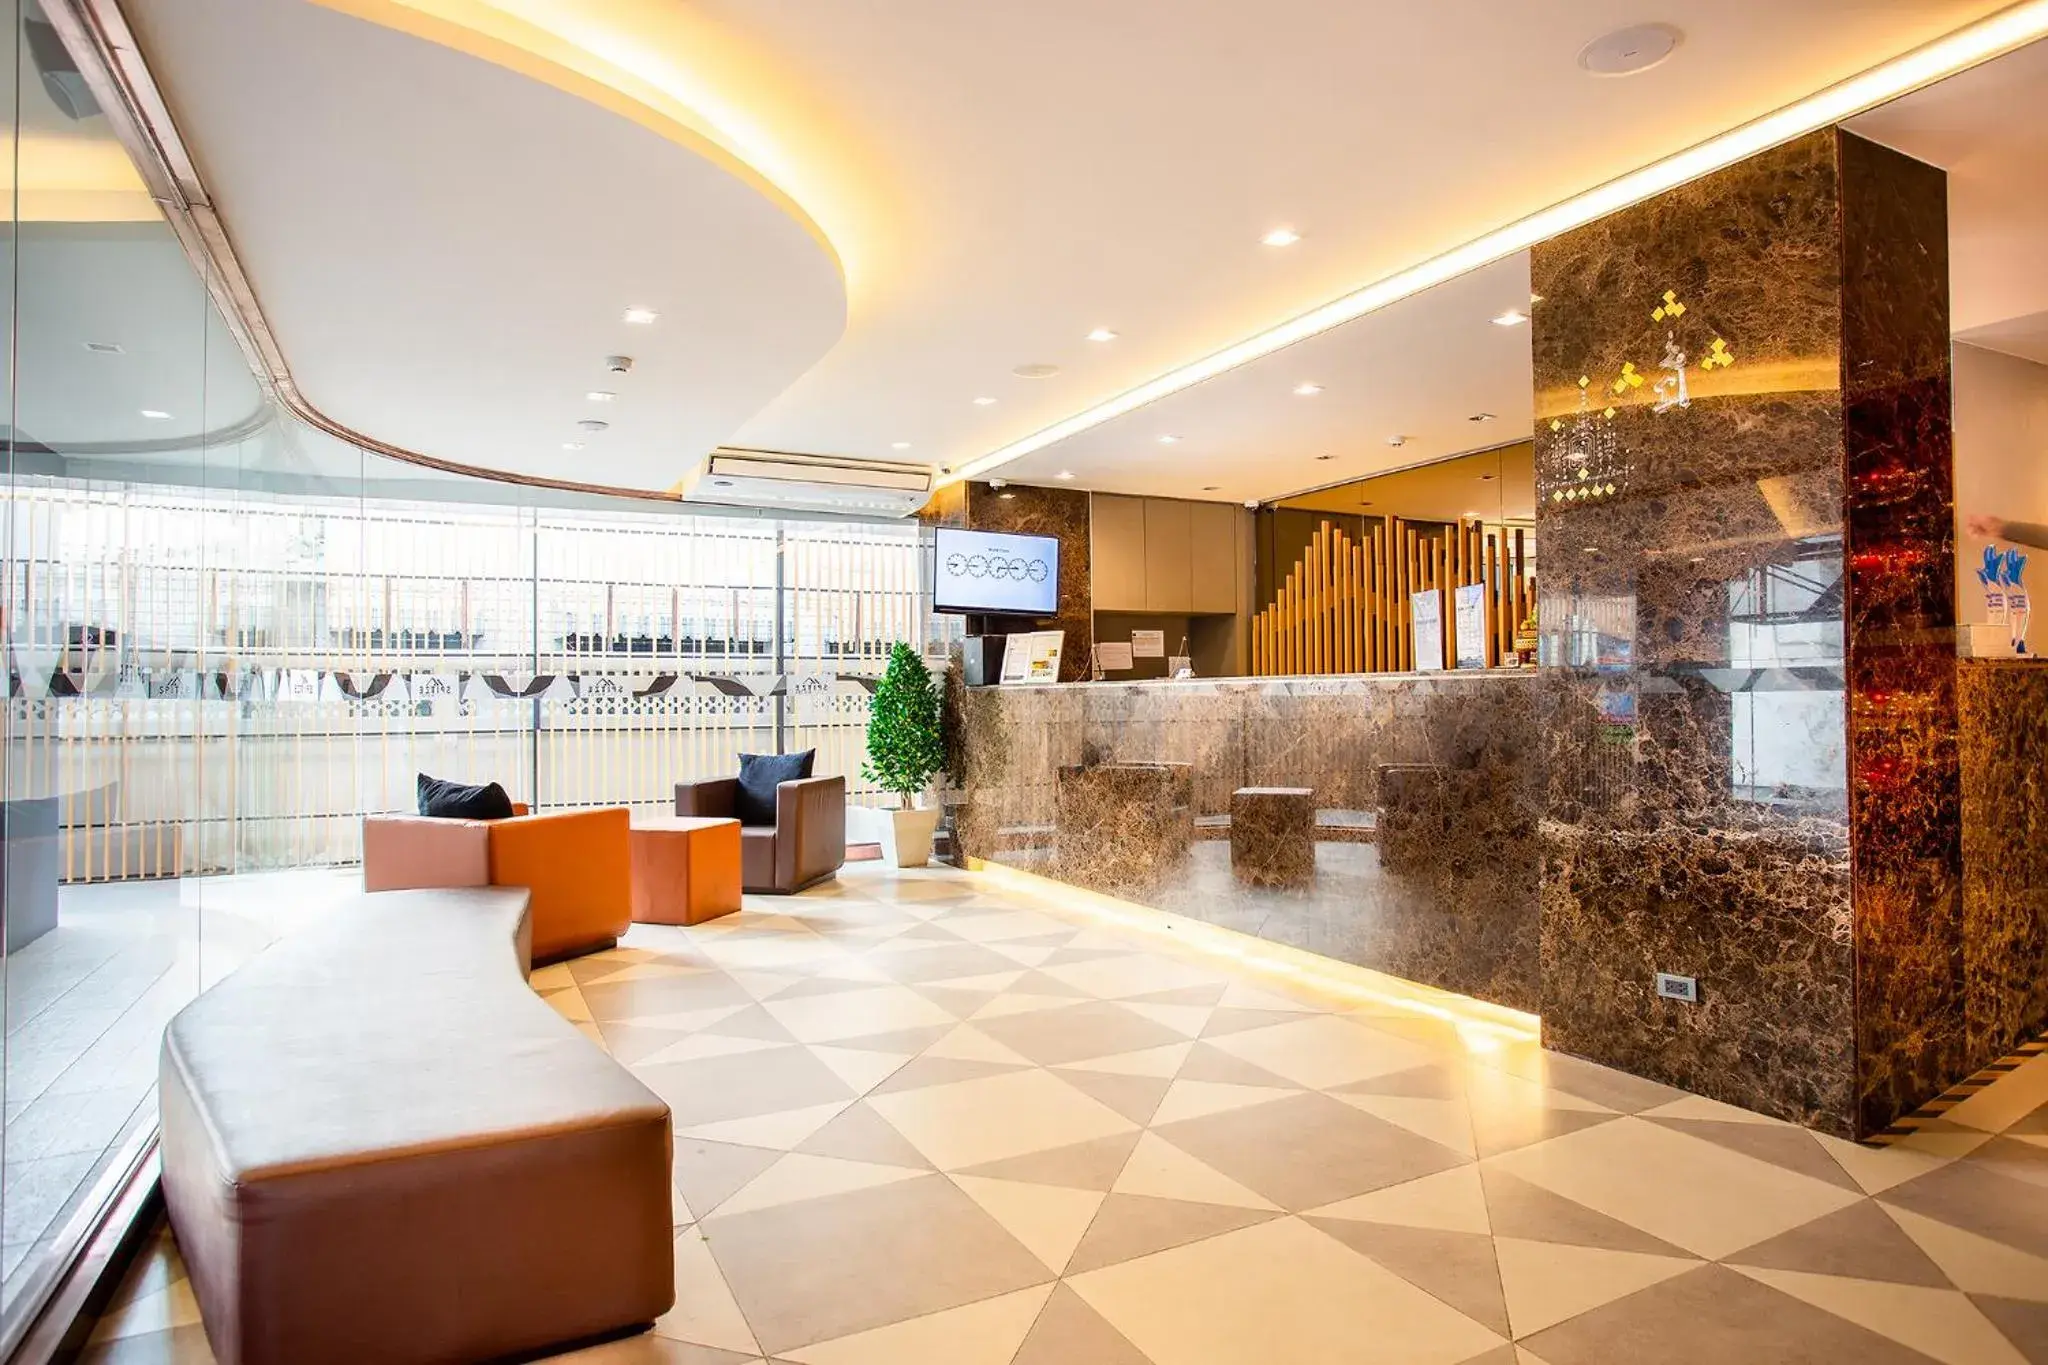 Lobby or reception in Spittze Hotel Pratunam